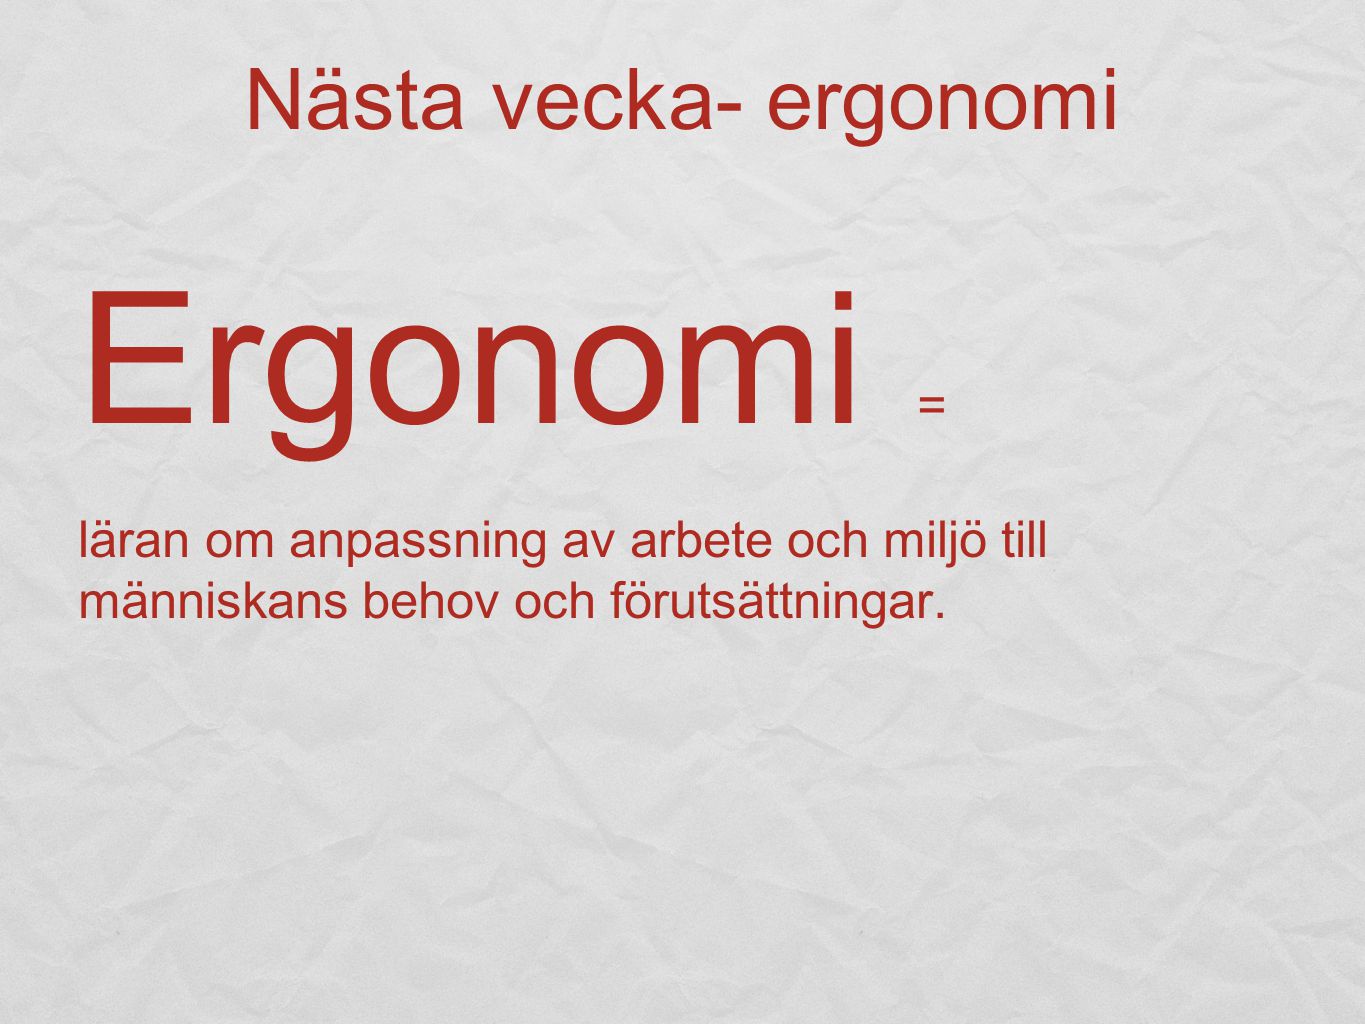 Ergonomi = Nästa vecka- ergonomi